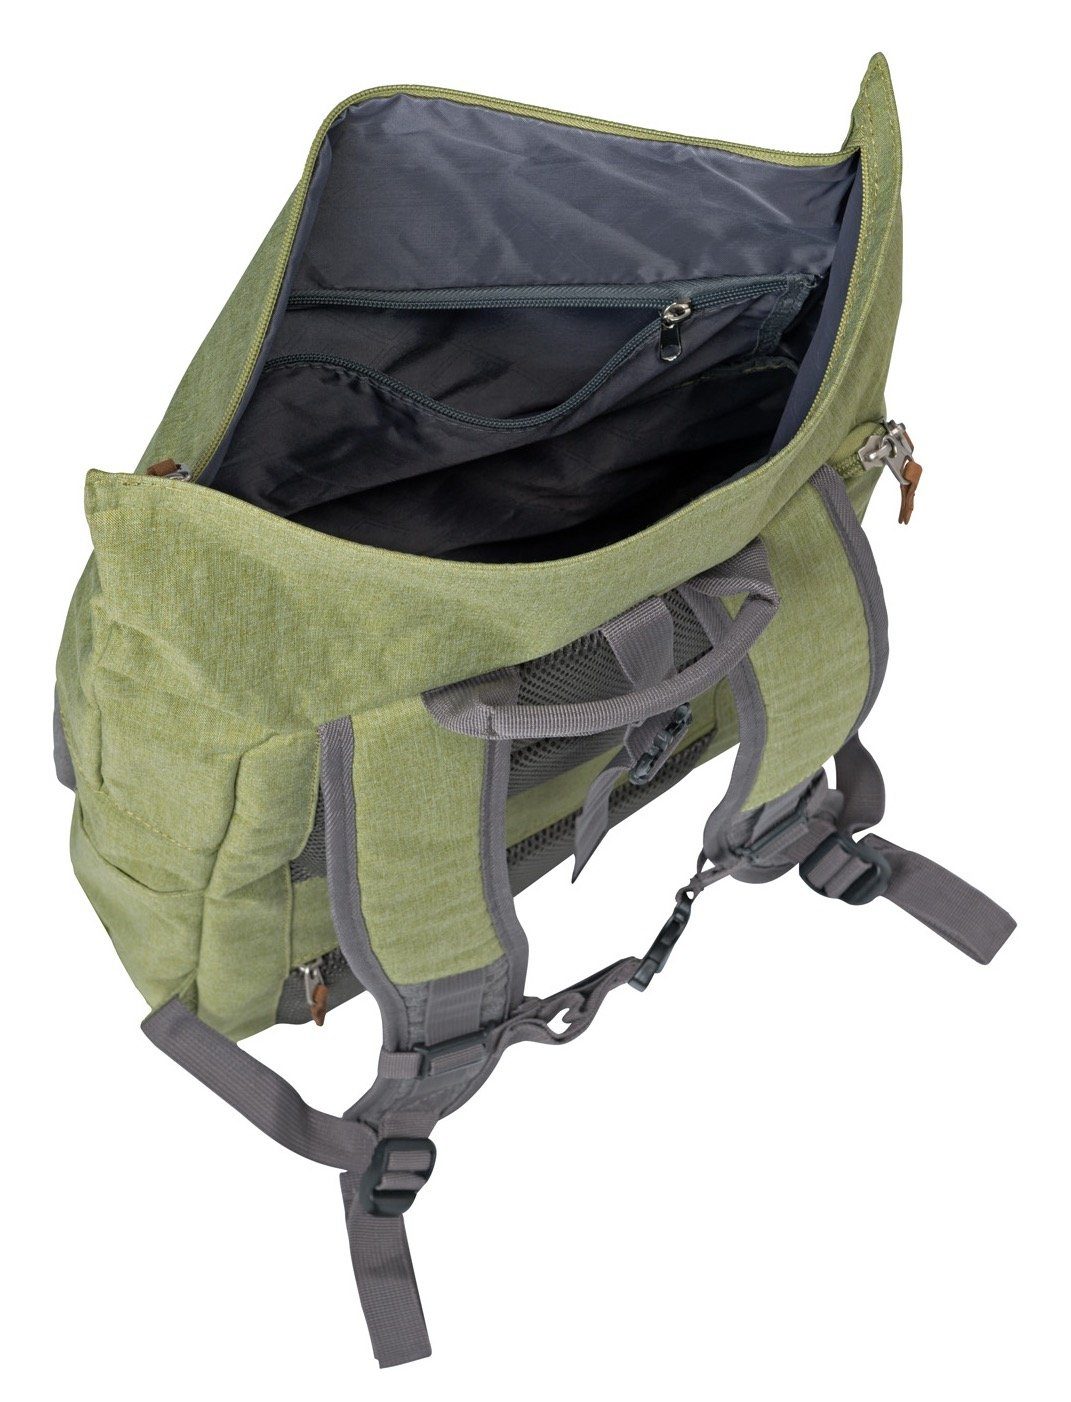 grün/grau viel Rollup Daypack Rucksack, Stauraum mit travelite BASICS